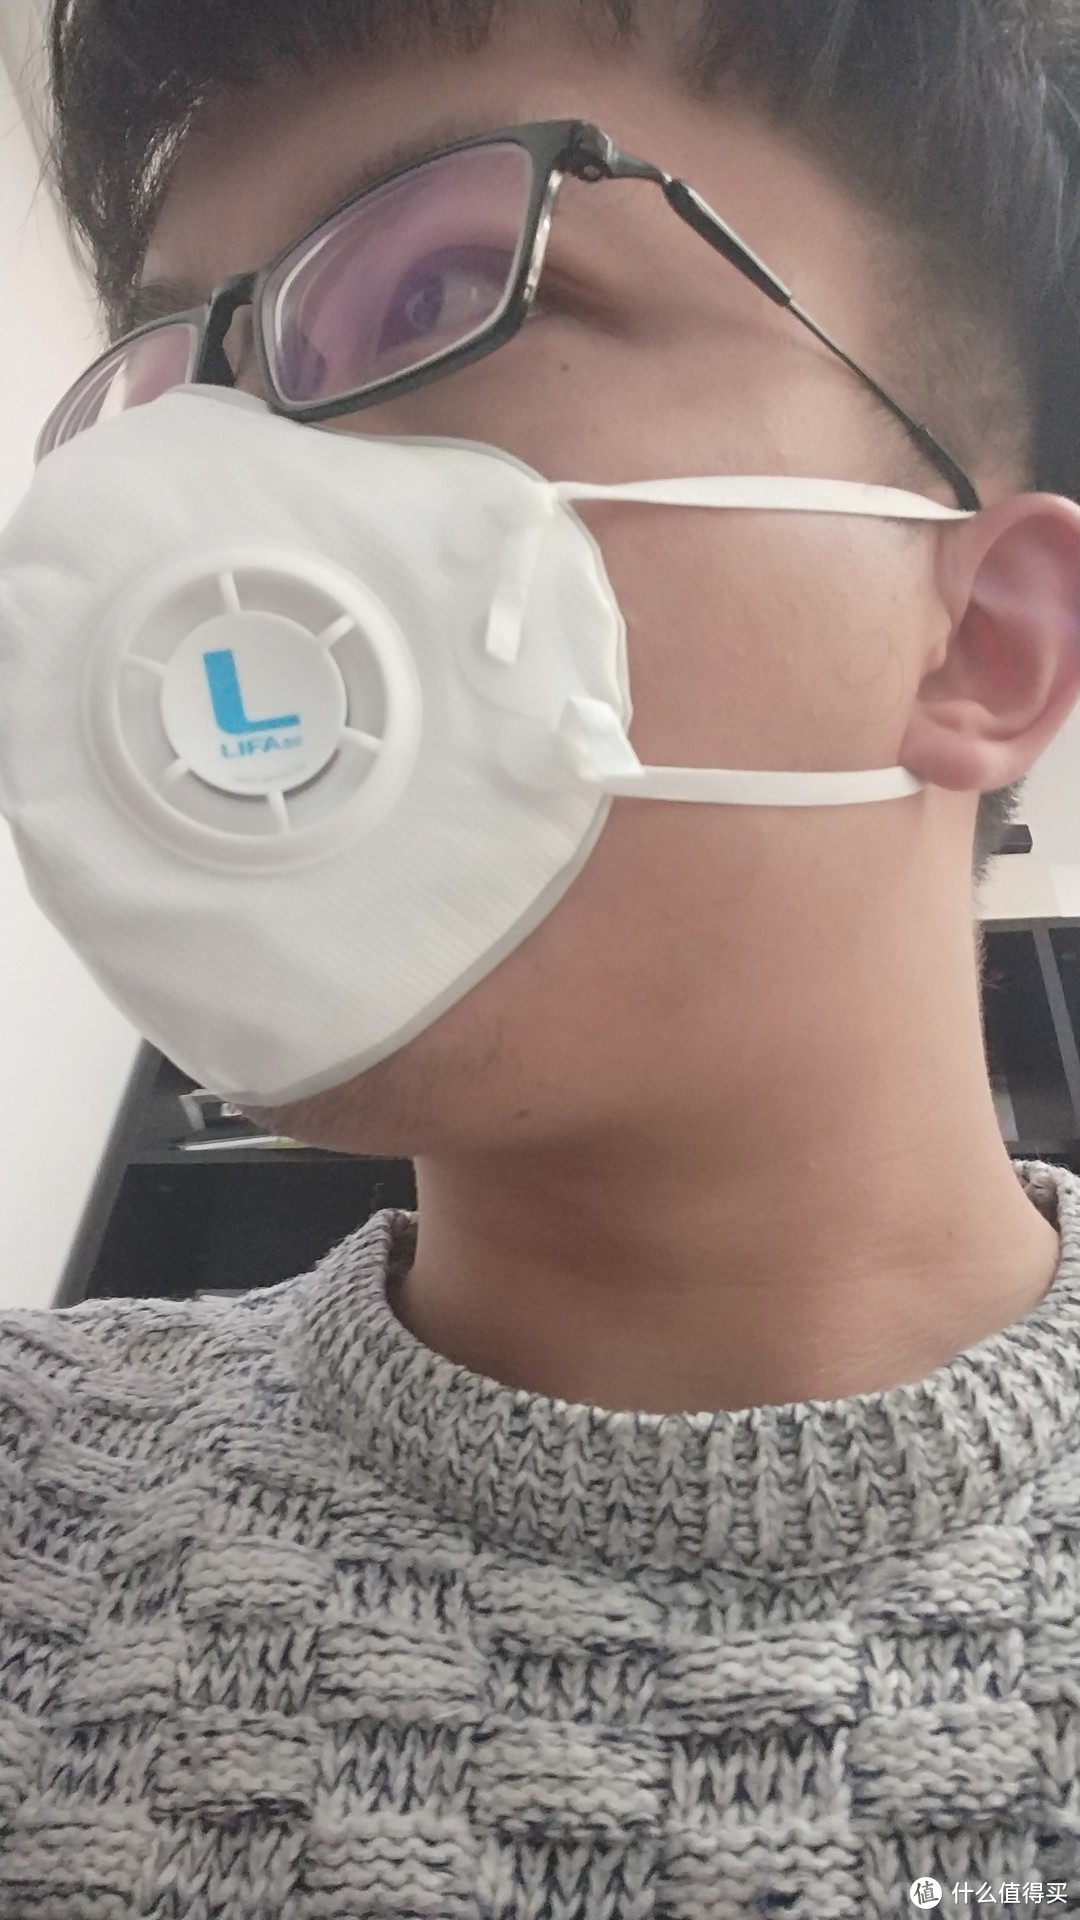 #原创新人#雾霾呼吸不起雾——LIFAair LM99 自吸过滤式防雾霾口罩